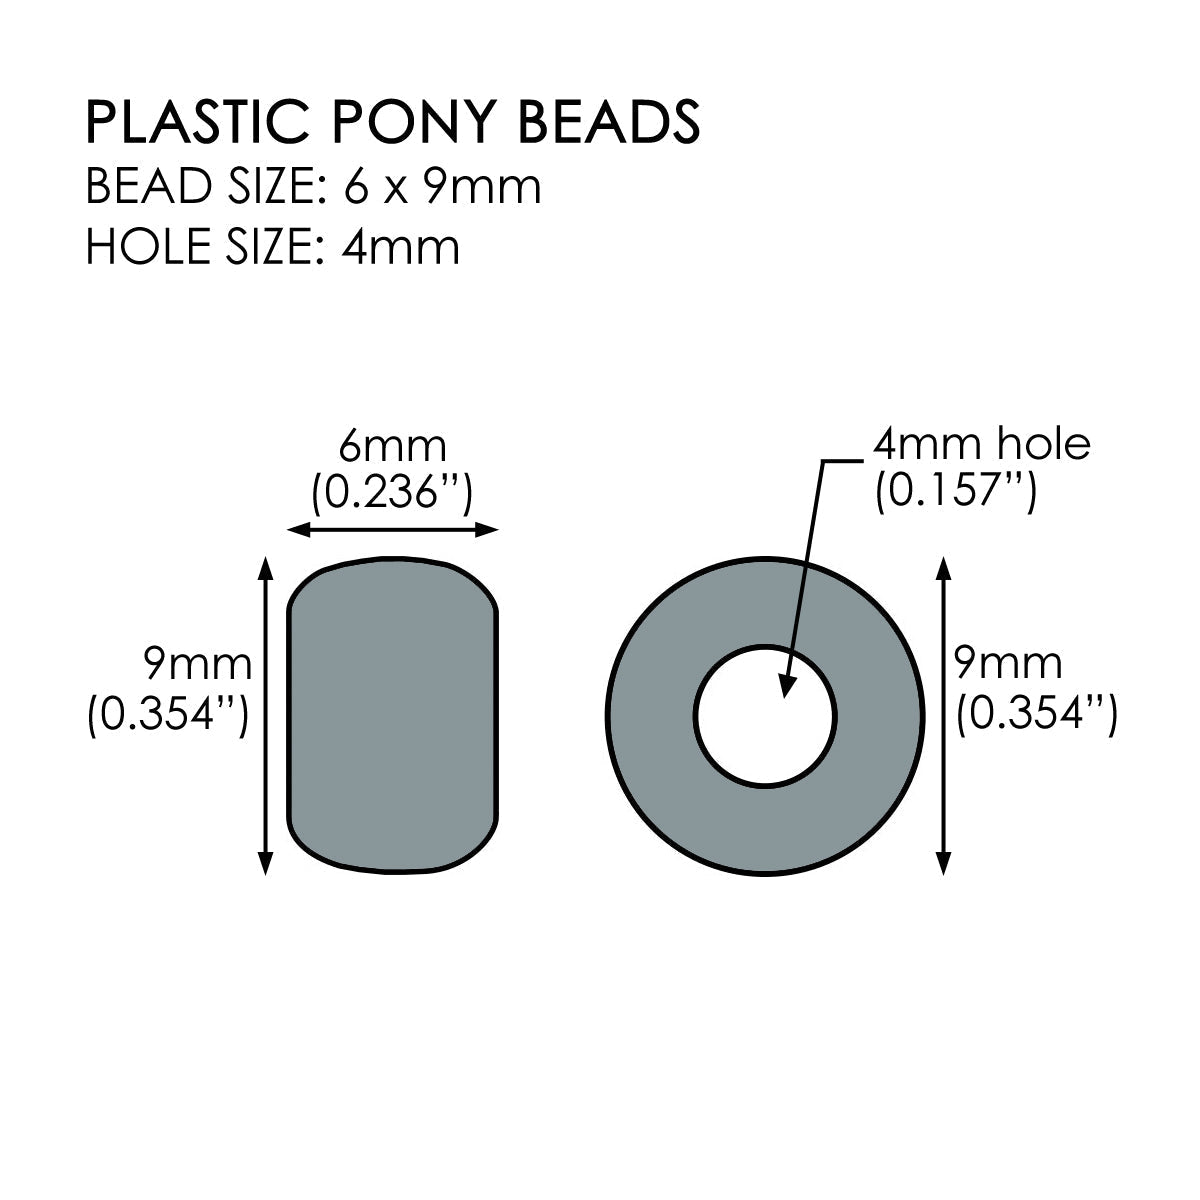 Pony Beads - Individual Colors - Pony Beads Plus